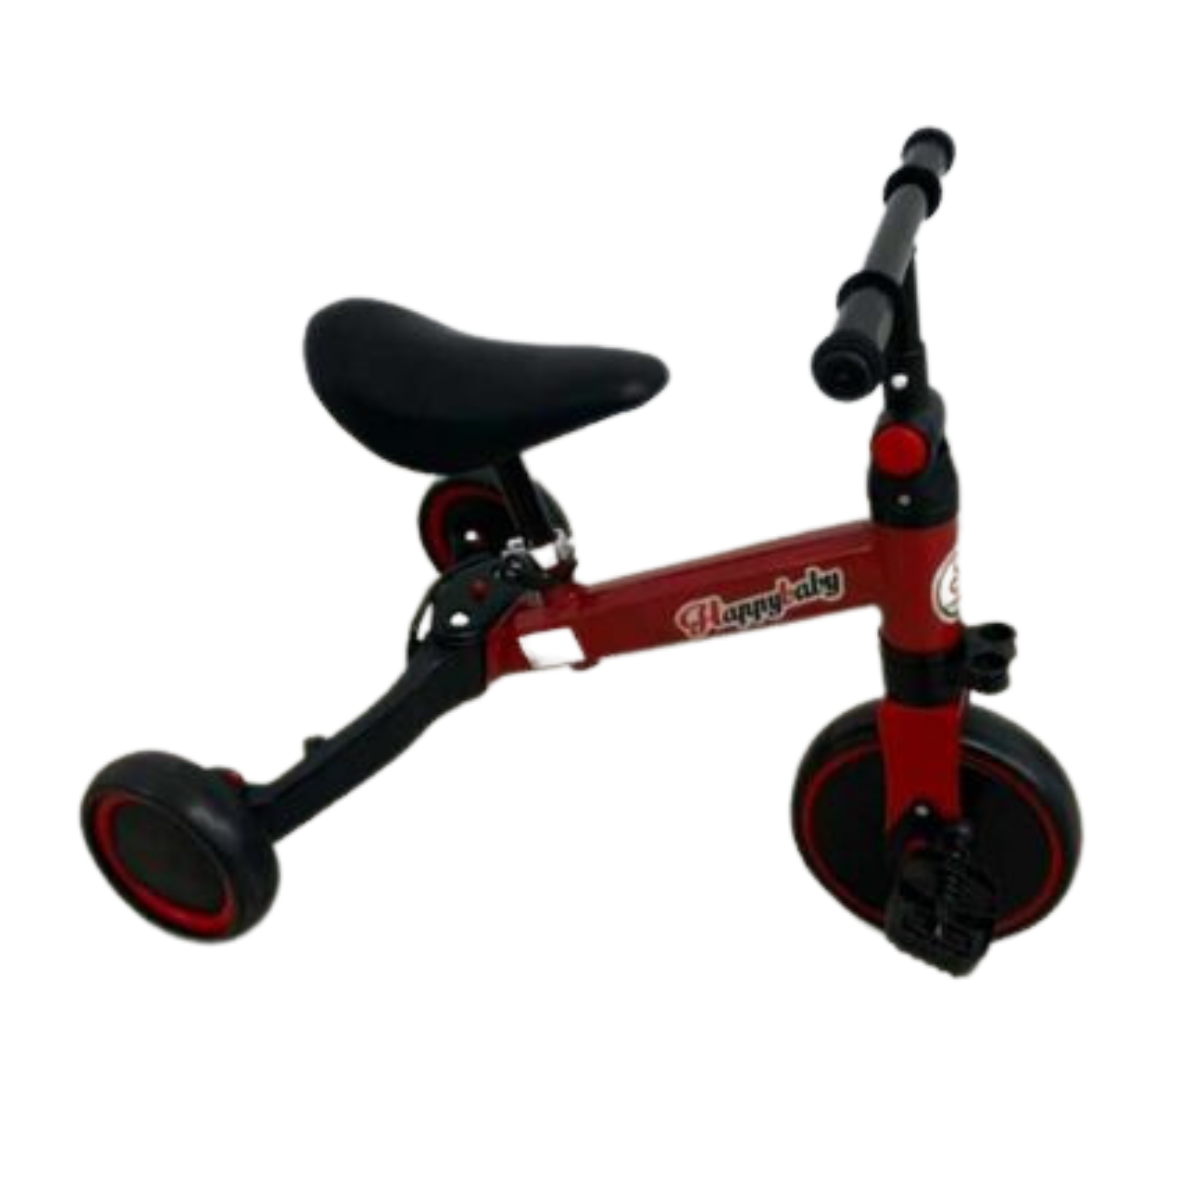 scooter triciclo para niños Comprar en tienda onlineshoppingcenterg Colombia centro de compras en linea